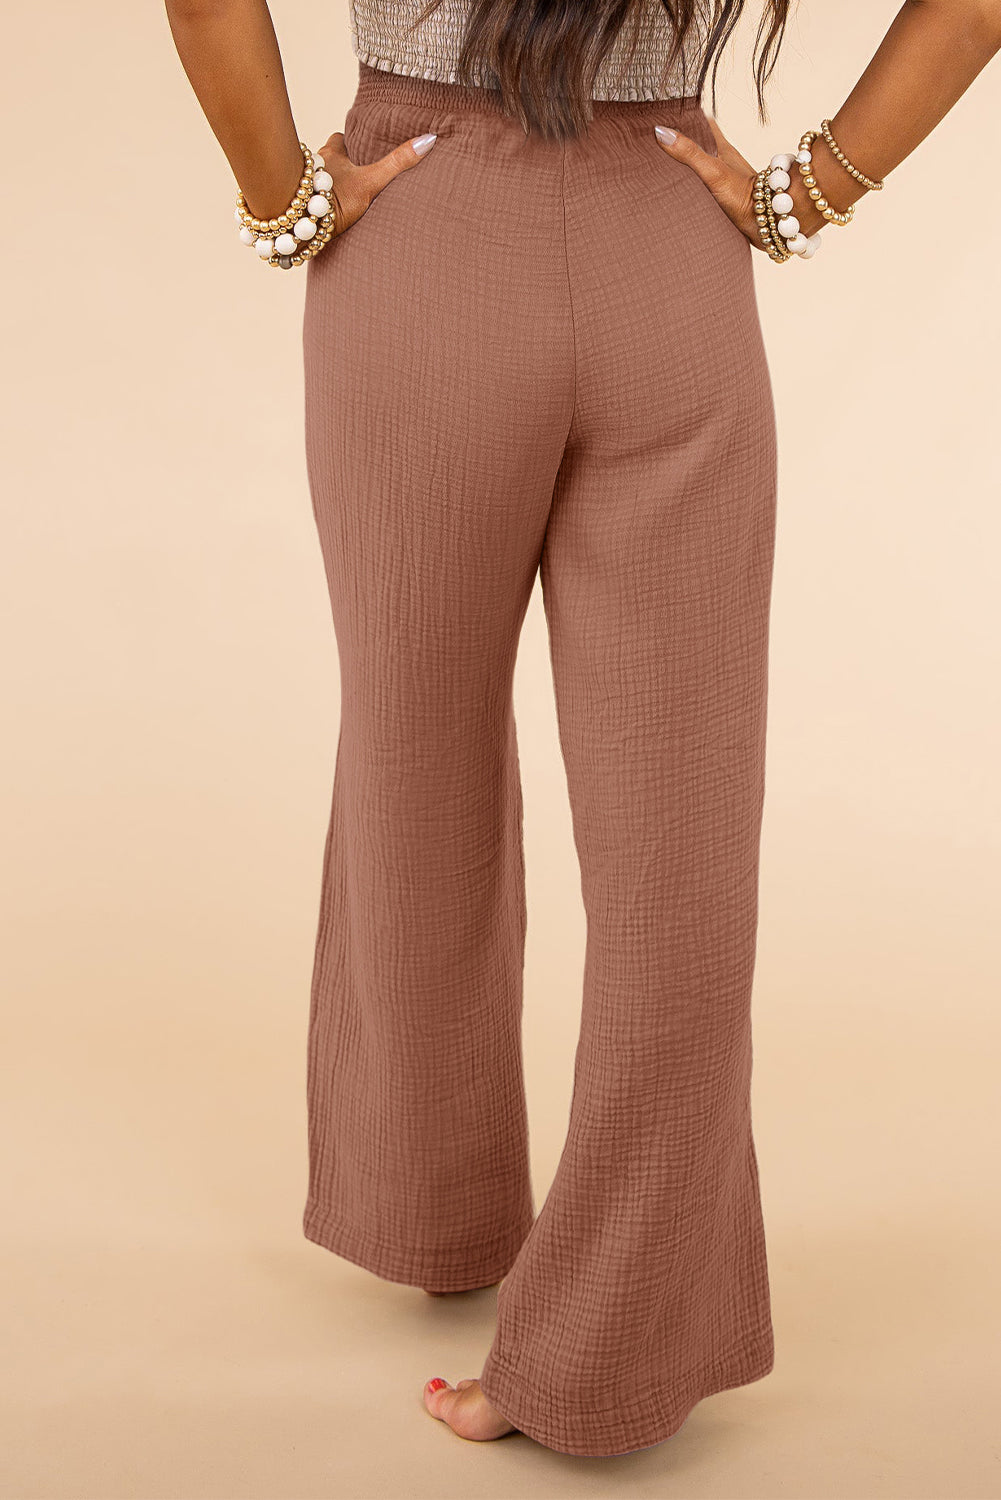 Rožnate teksturirane široke hlače velike velikosti z visokim pasom